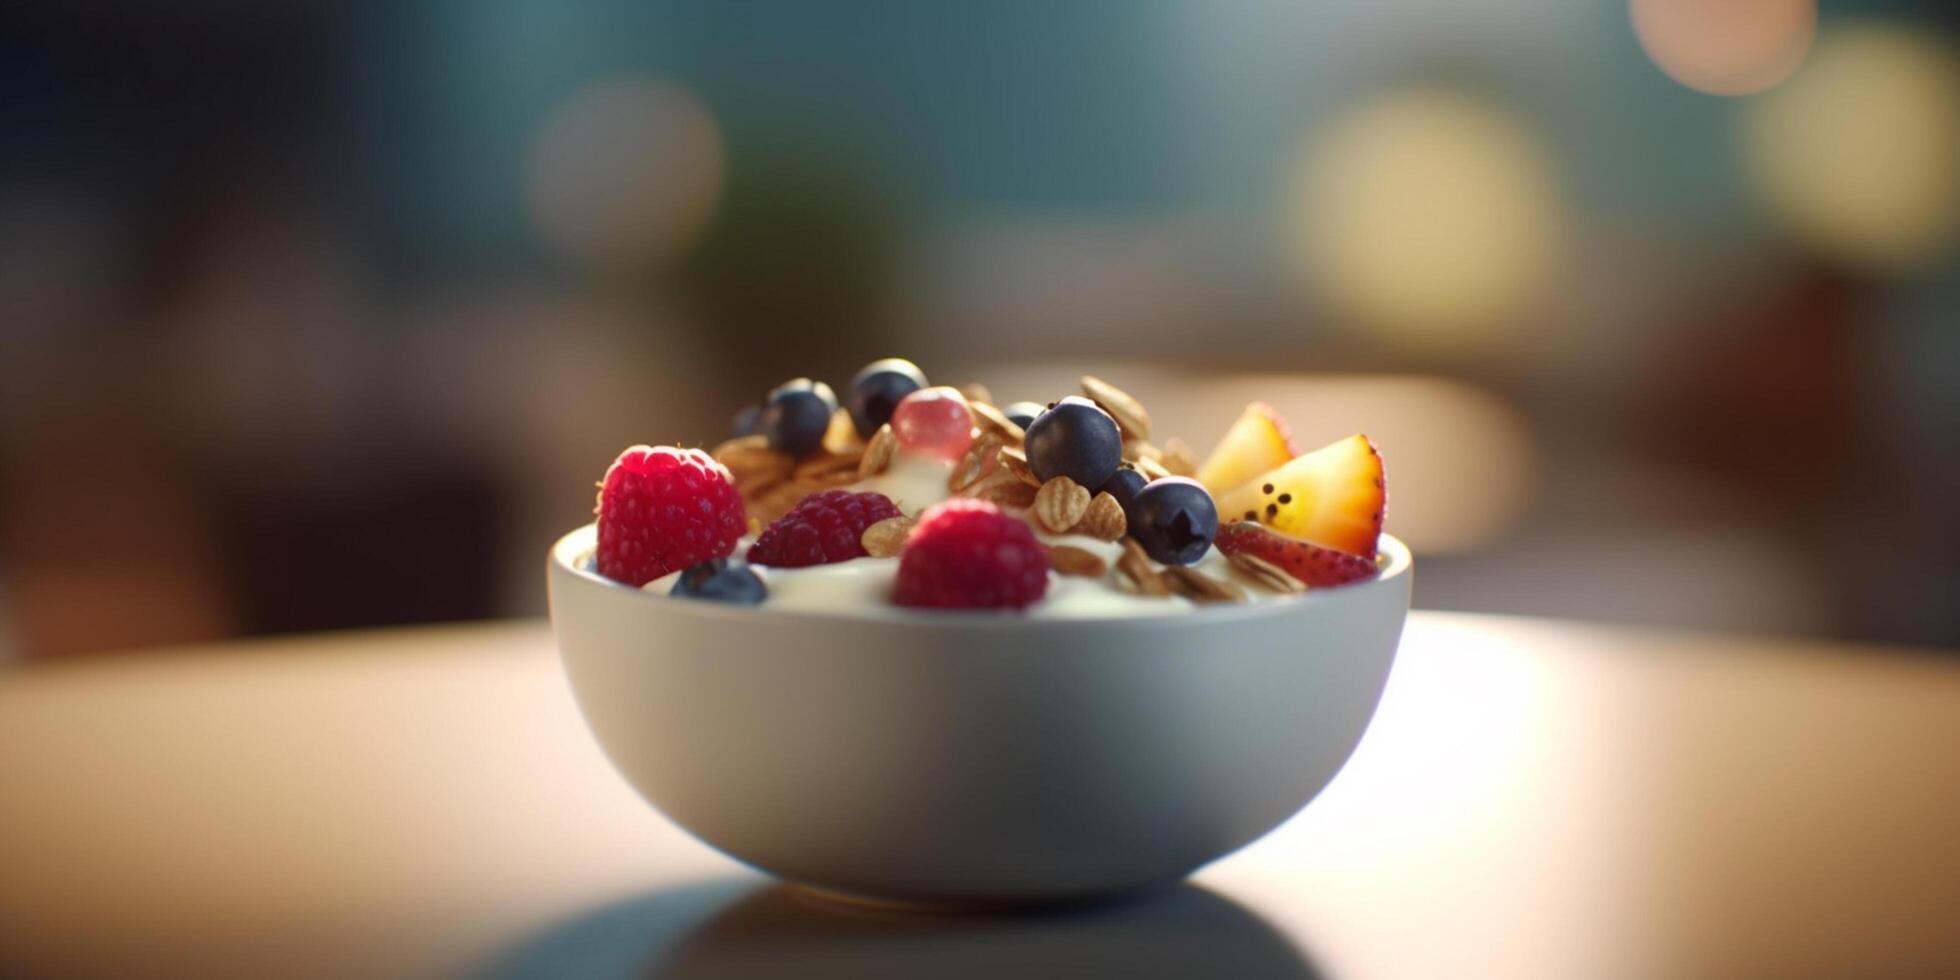 Berry Yogurt Parfait with Crunchy Granola and Fresh Berries photo